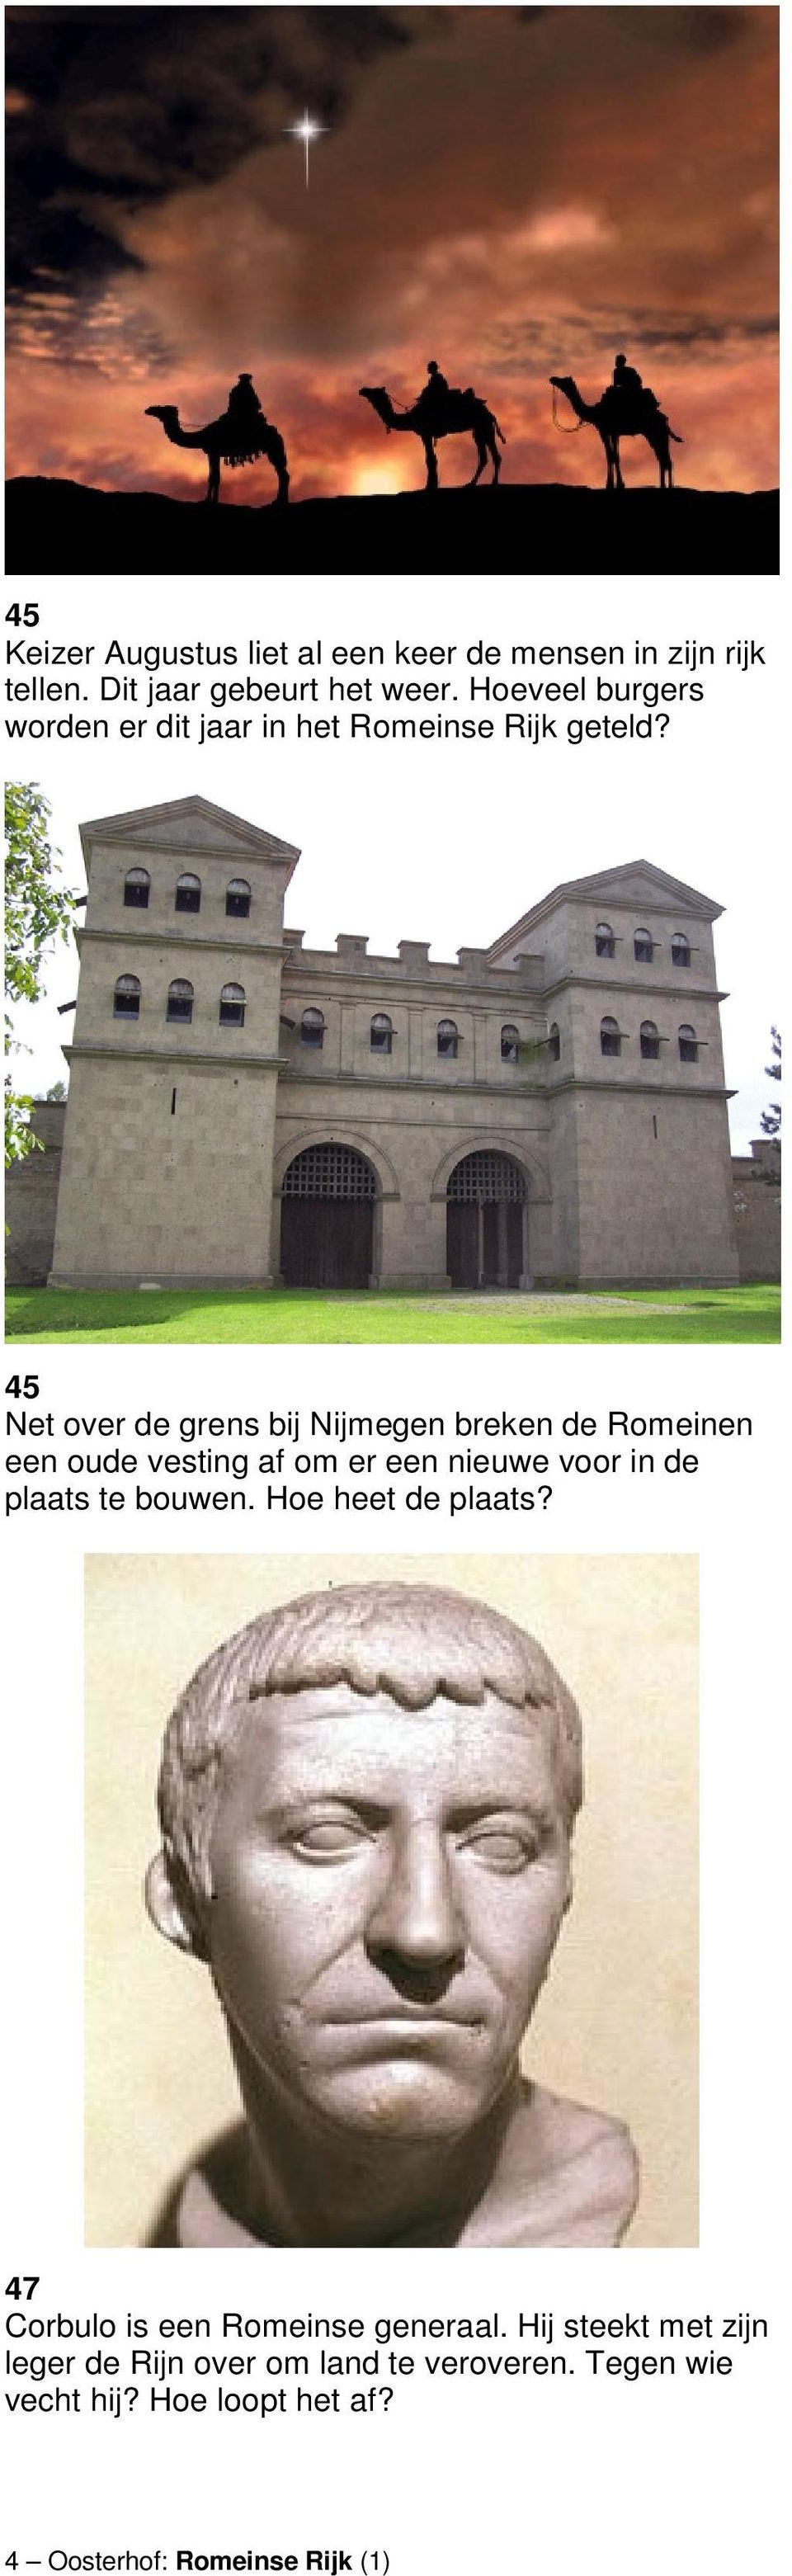 45 Net over de grens bij Nijmegen breken de Romeinen een oude vesting af om er een nieuwe voor in de plaats te